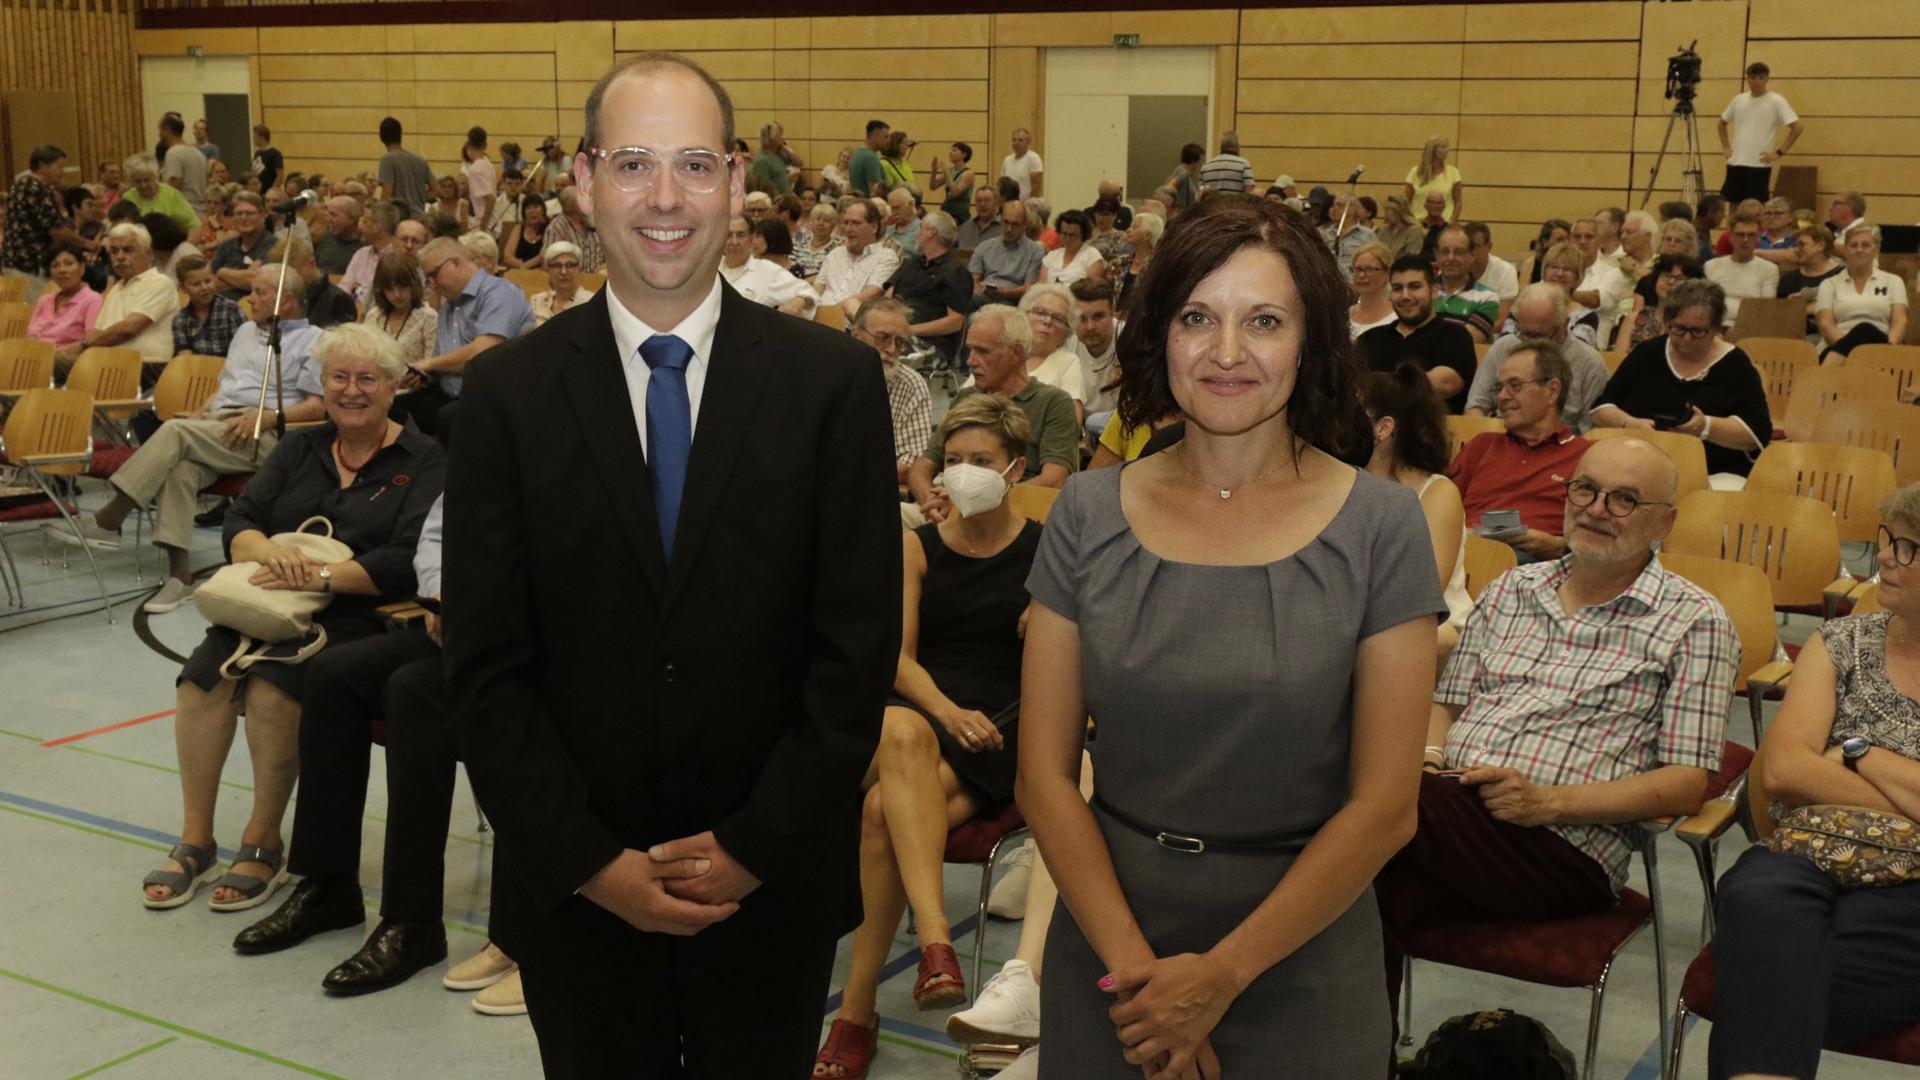 Johannes Kopp und Veronika Laukart bei der offiziellen Kandidatenvorstellung in der Wolf-Eberstein-Halle Muggensturm.